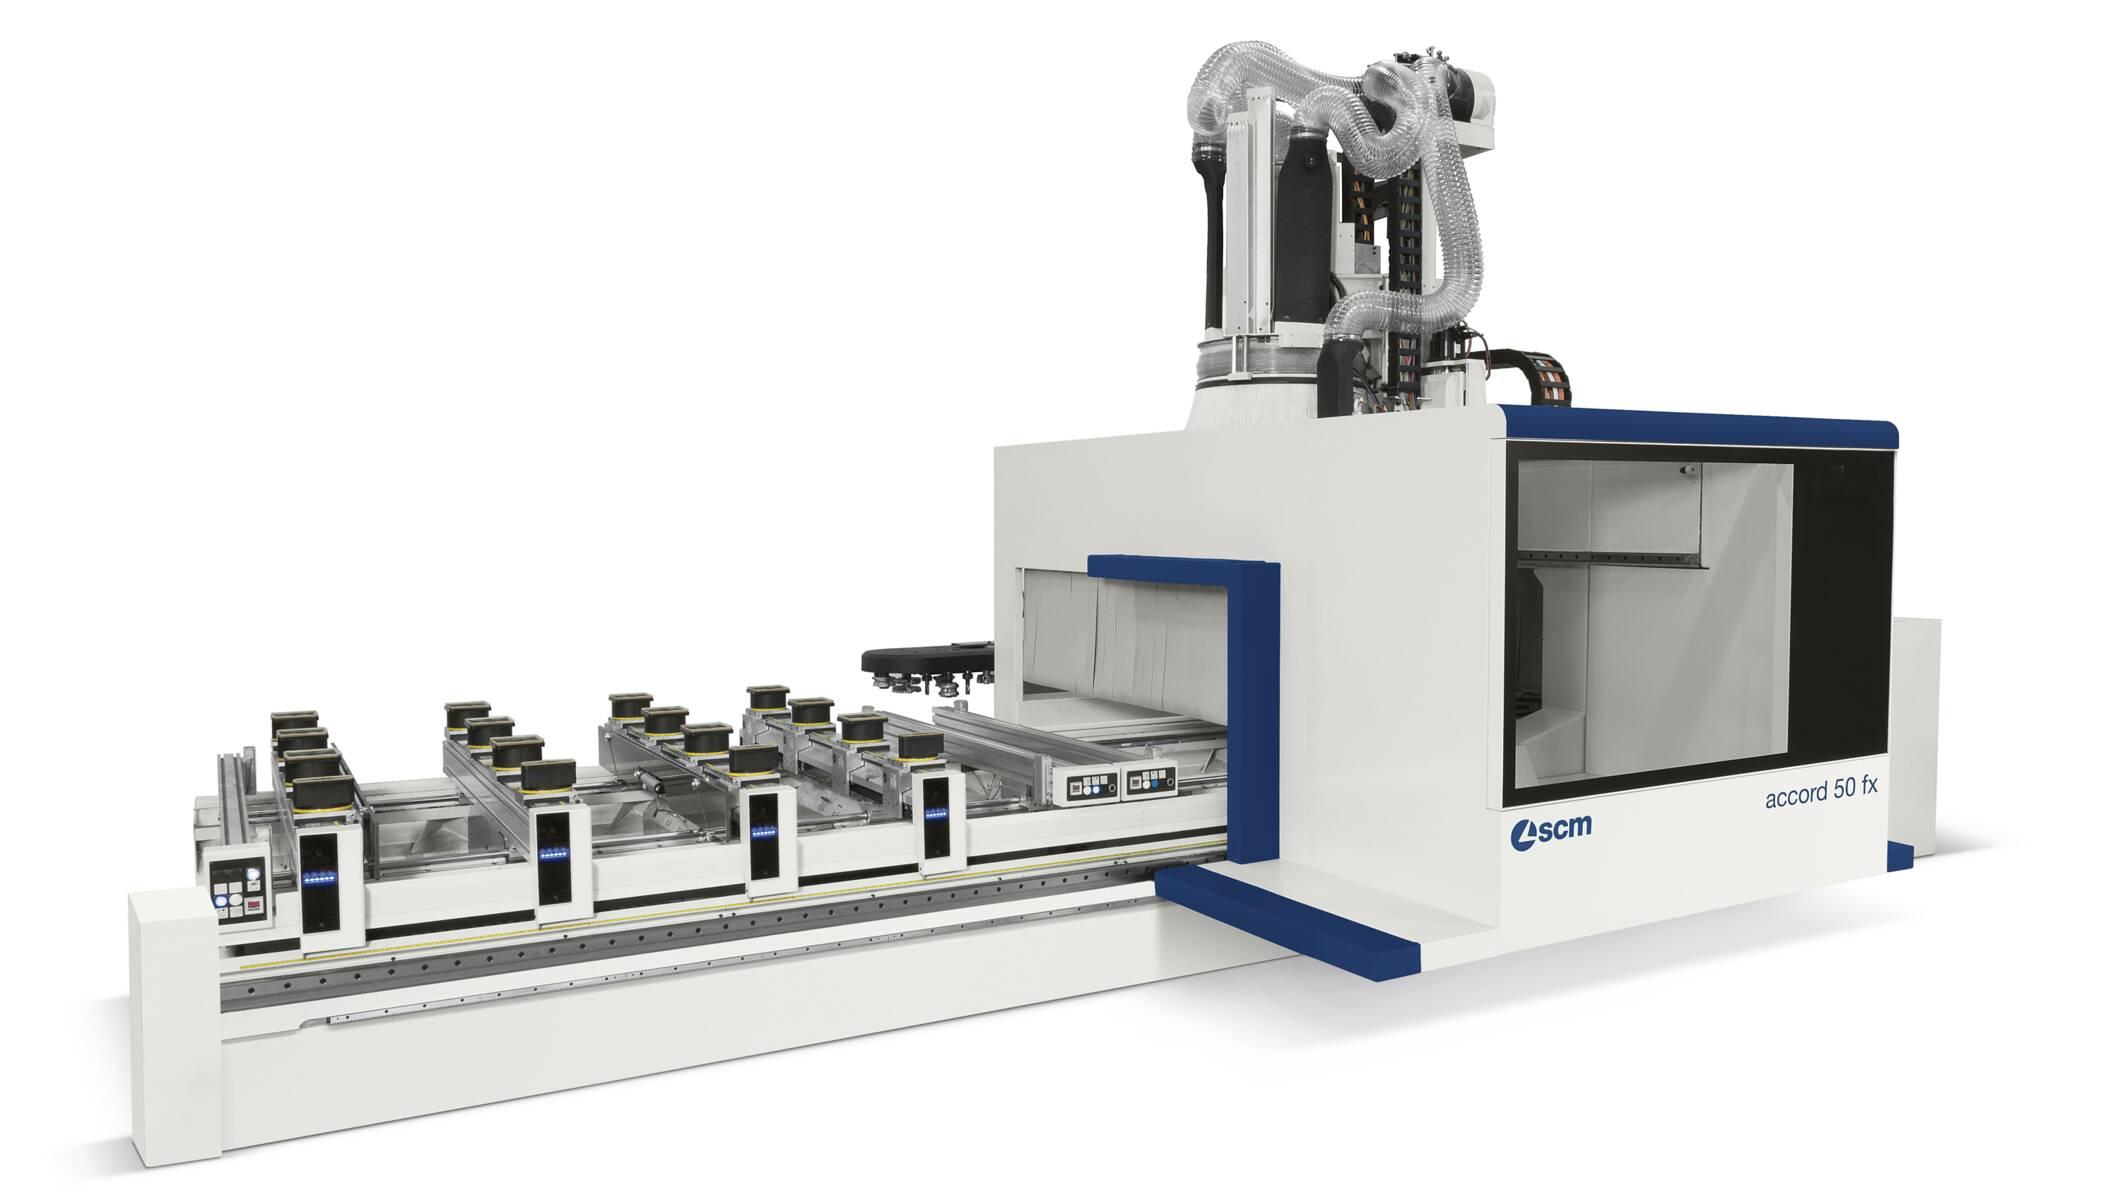 CNC-Bearbeitungszentren - CNC-Bearbeitungsmaschinen zum Bohren und Fräsen - accord 50 fx